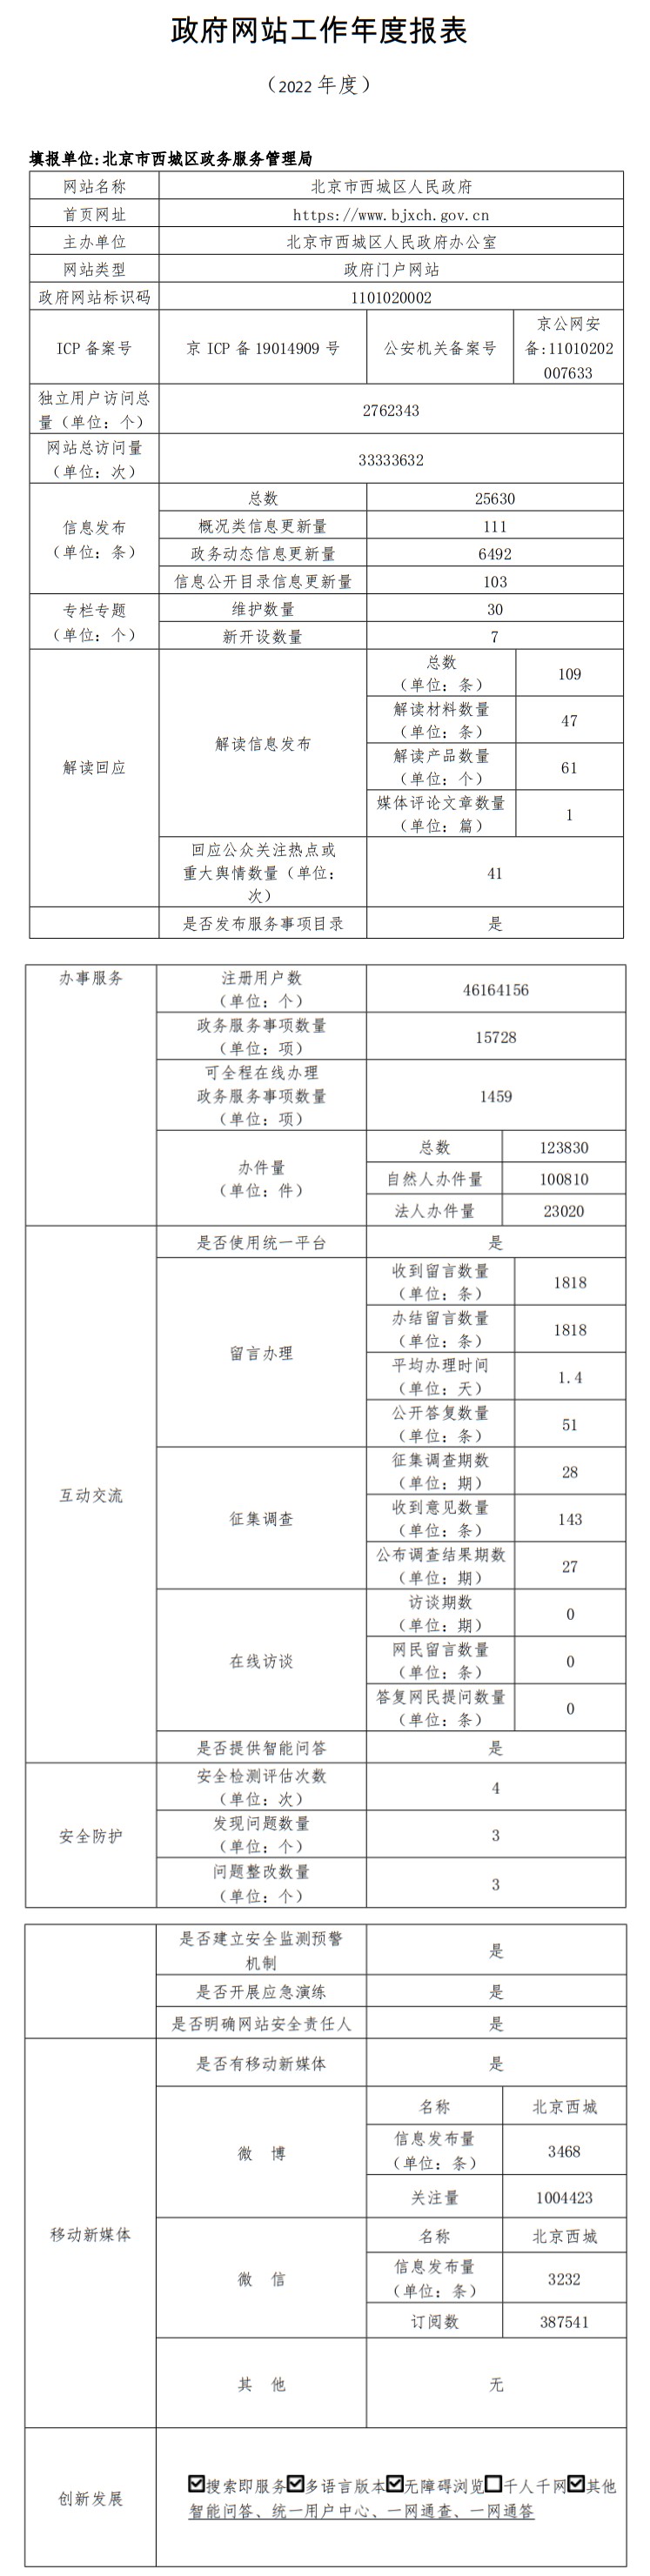 北京市西城区人民政府2022年政府网站年度工作报表